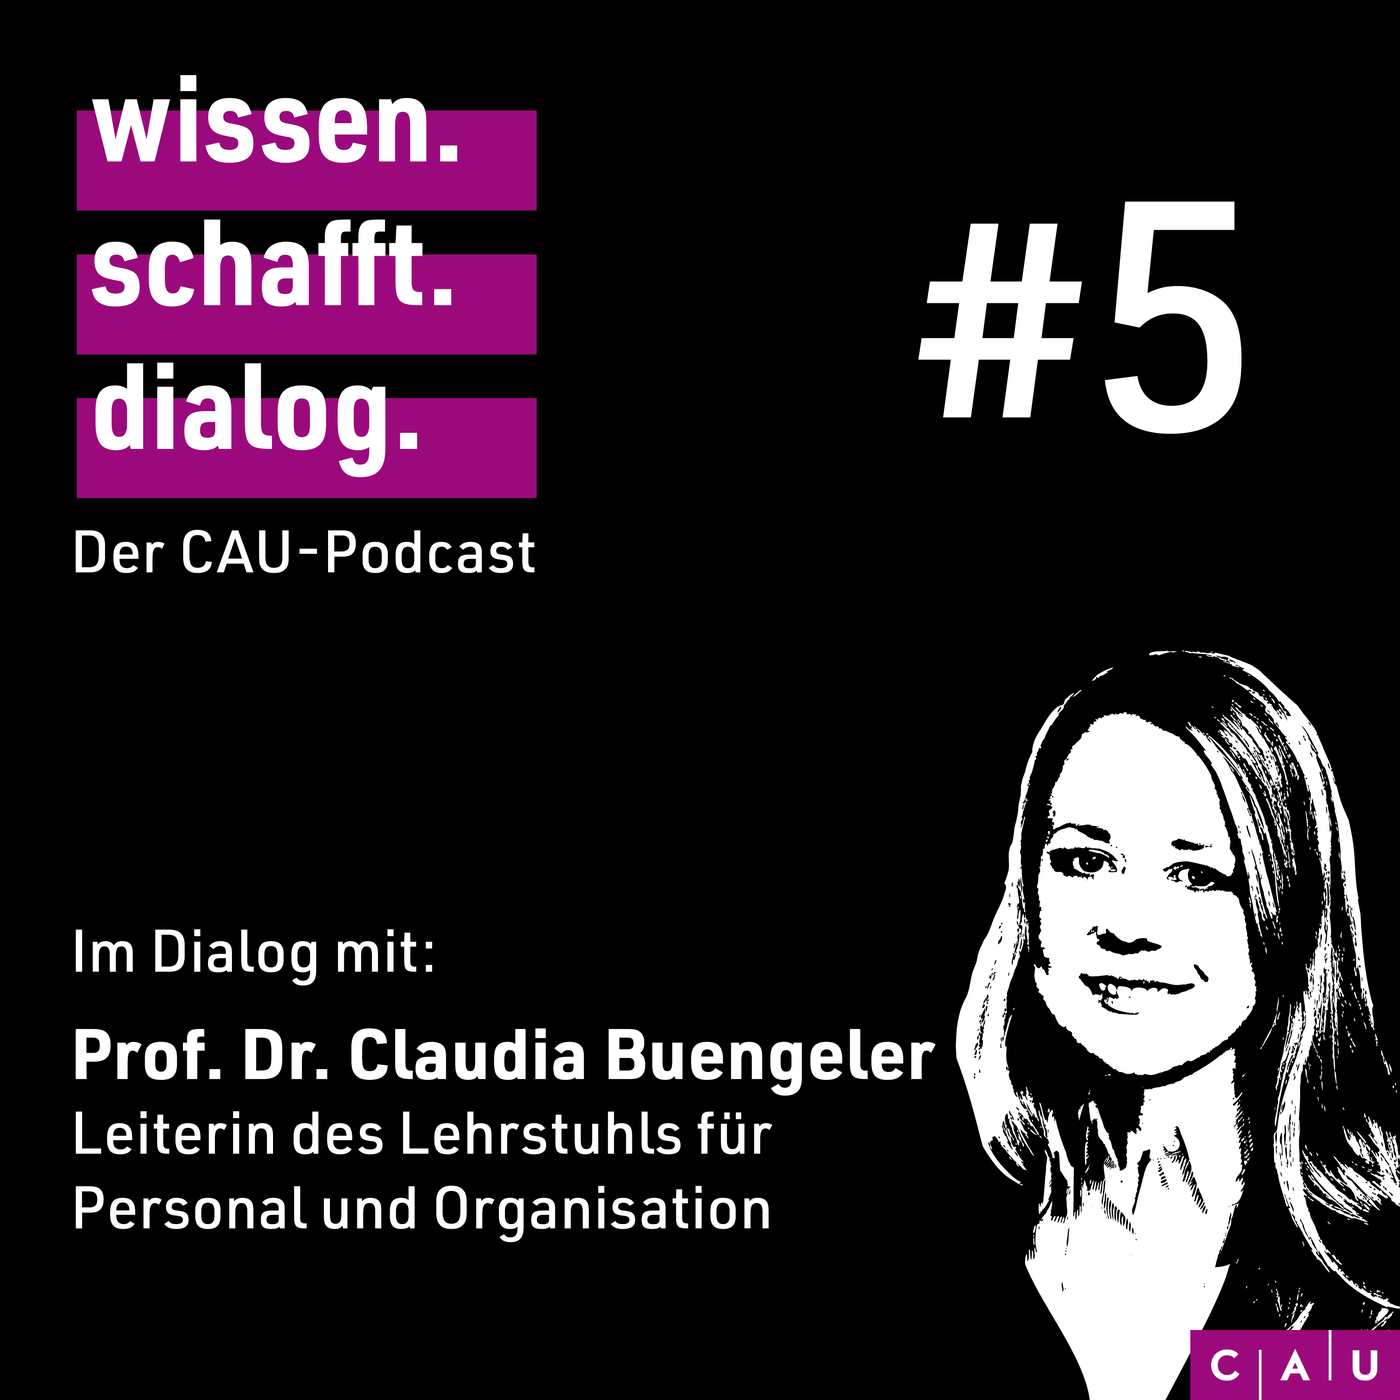 Im Dialog mit: Prof. Dr. Claudia Buengeler